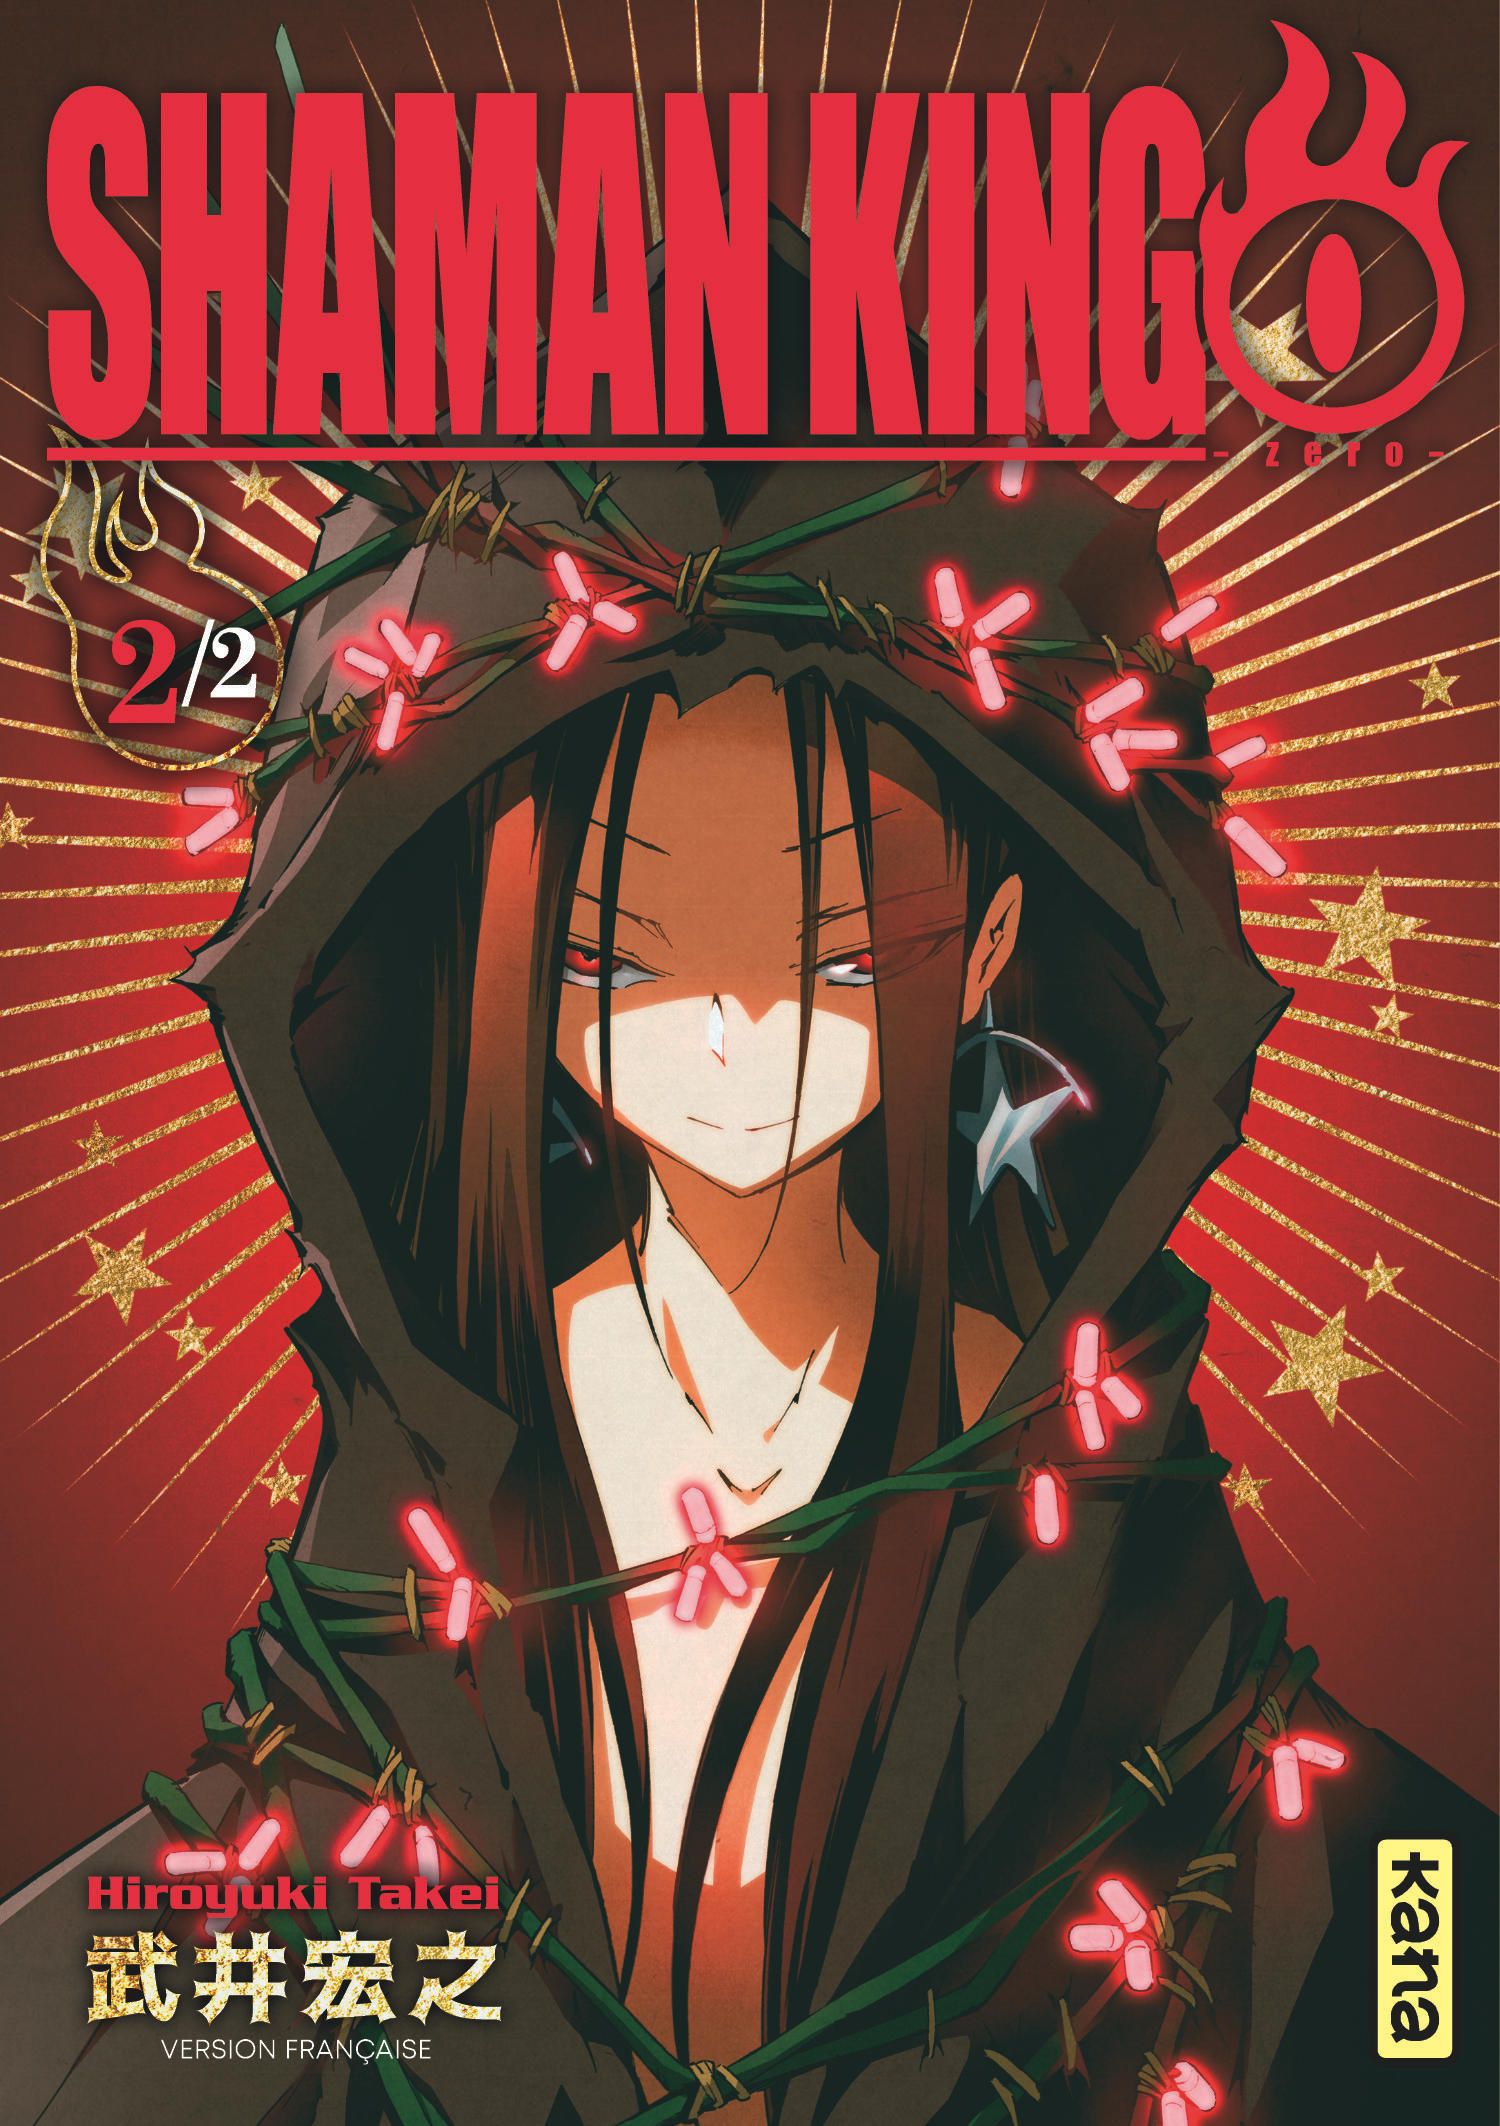 Shaman King 0 - Zéro Vol.2